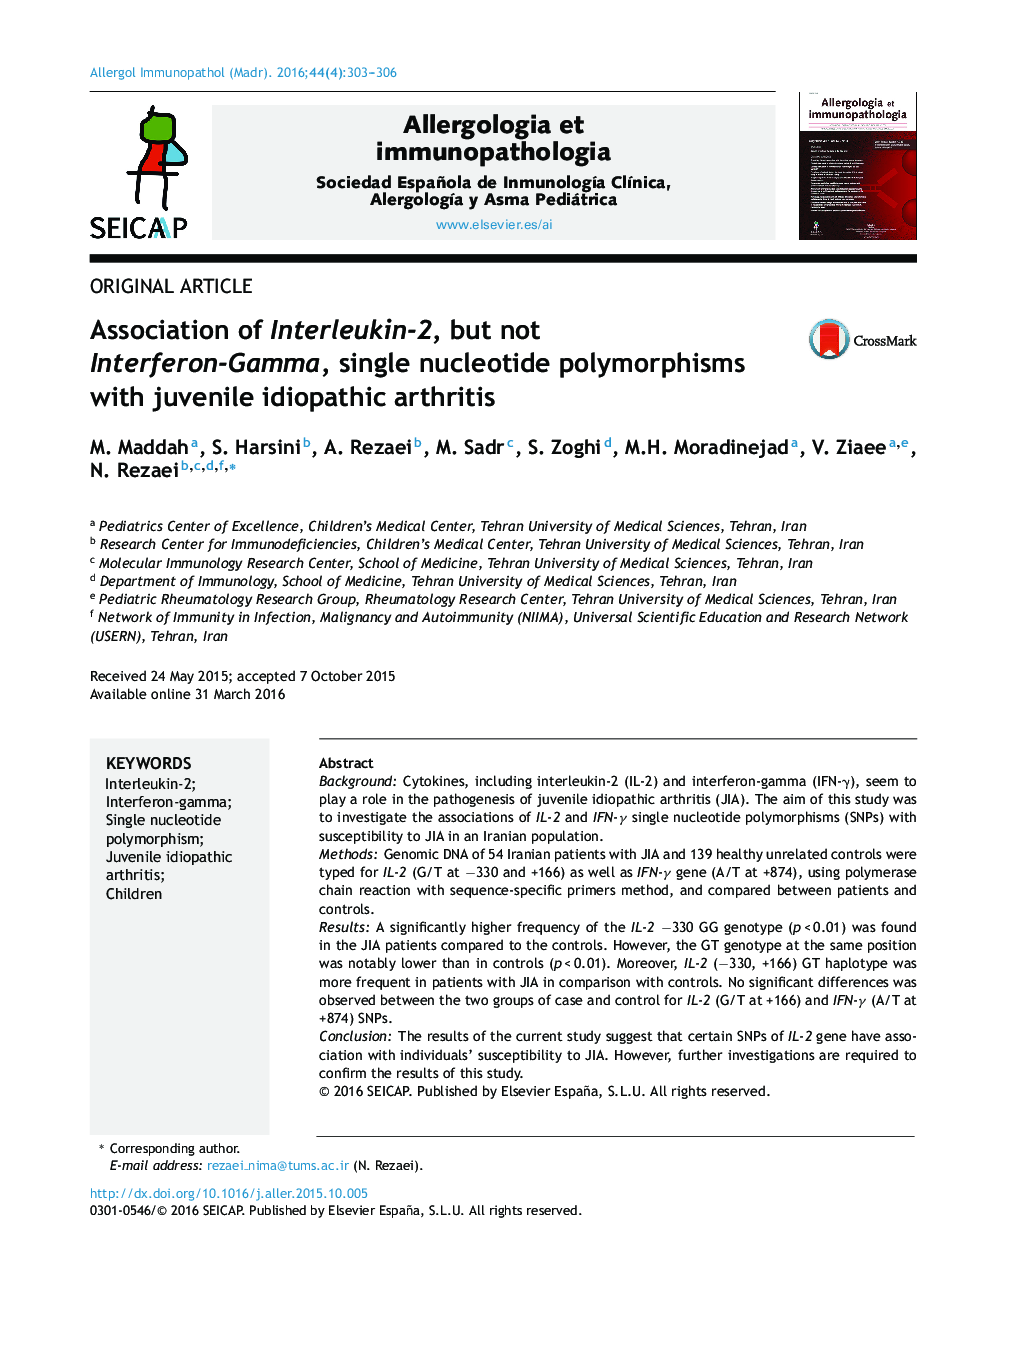 انجمن اینترلوکین-2، اما اینترفرون گاما، پلیمورفیسم تک نوکلئوتیدی با آرتروز ایدیوپاتیک نوجوانان 